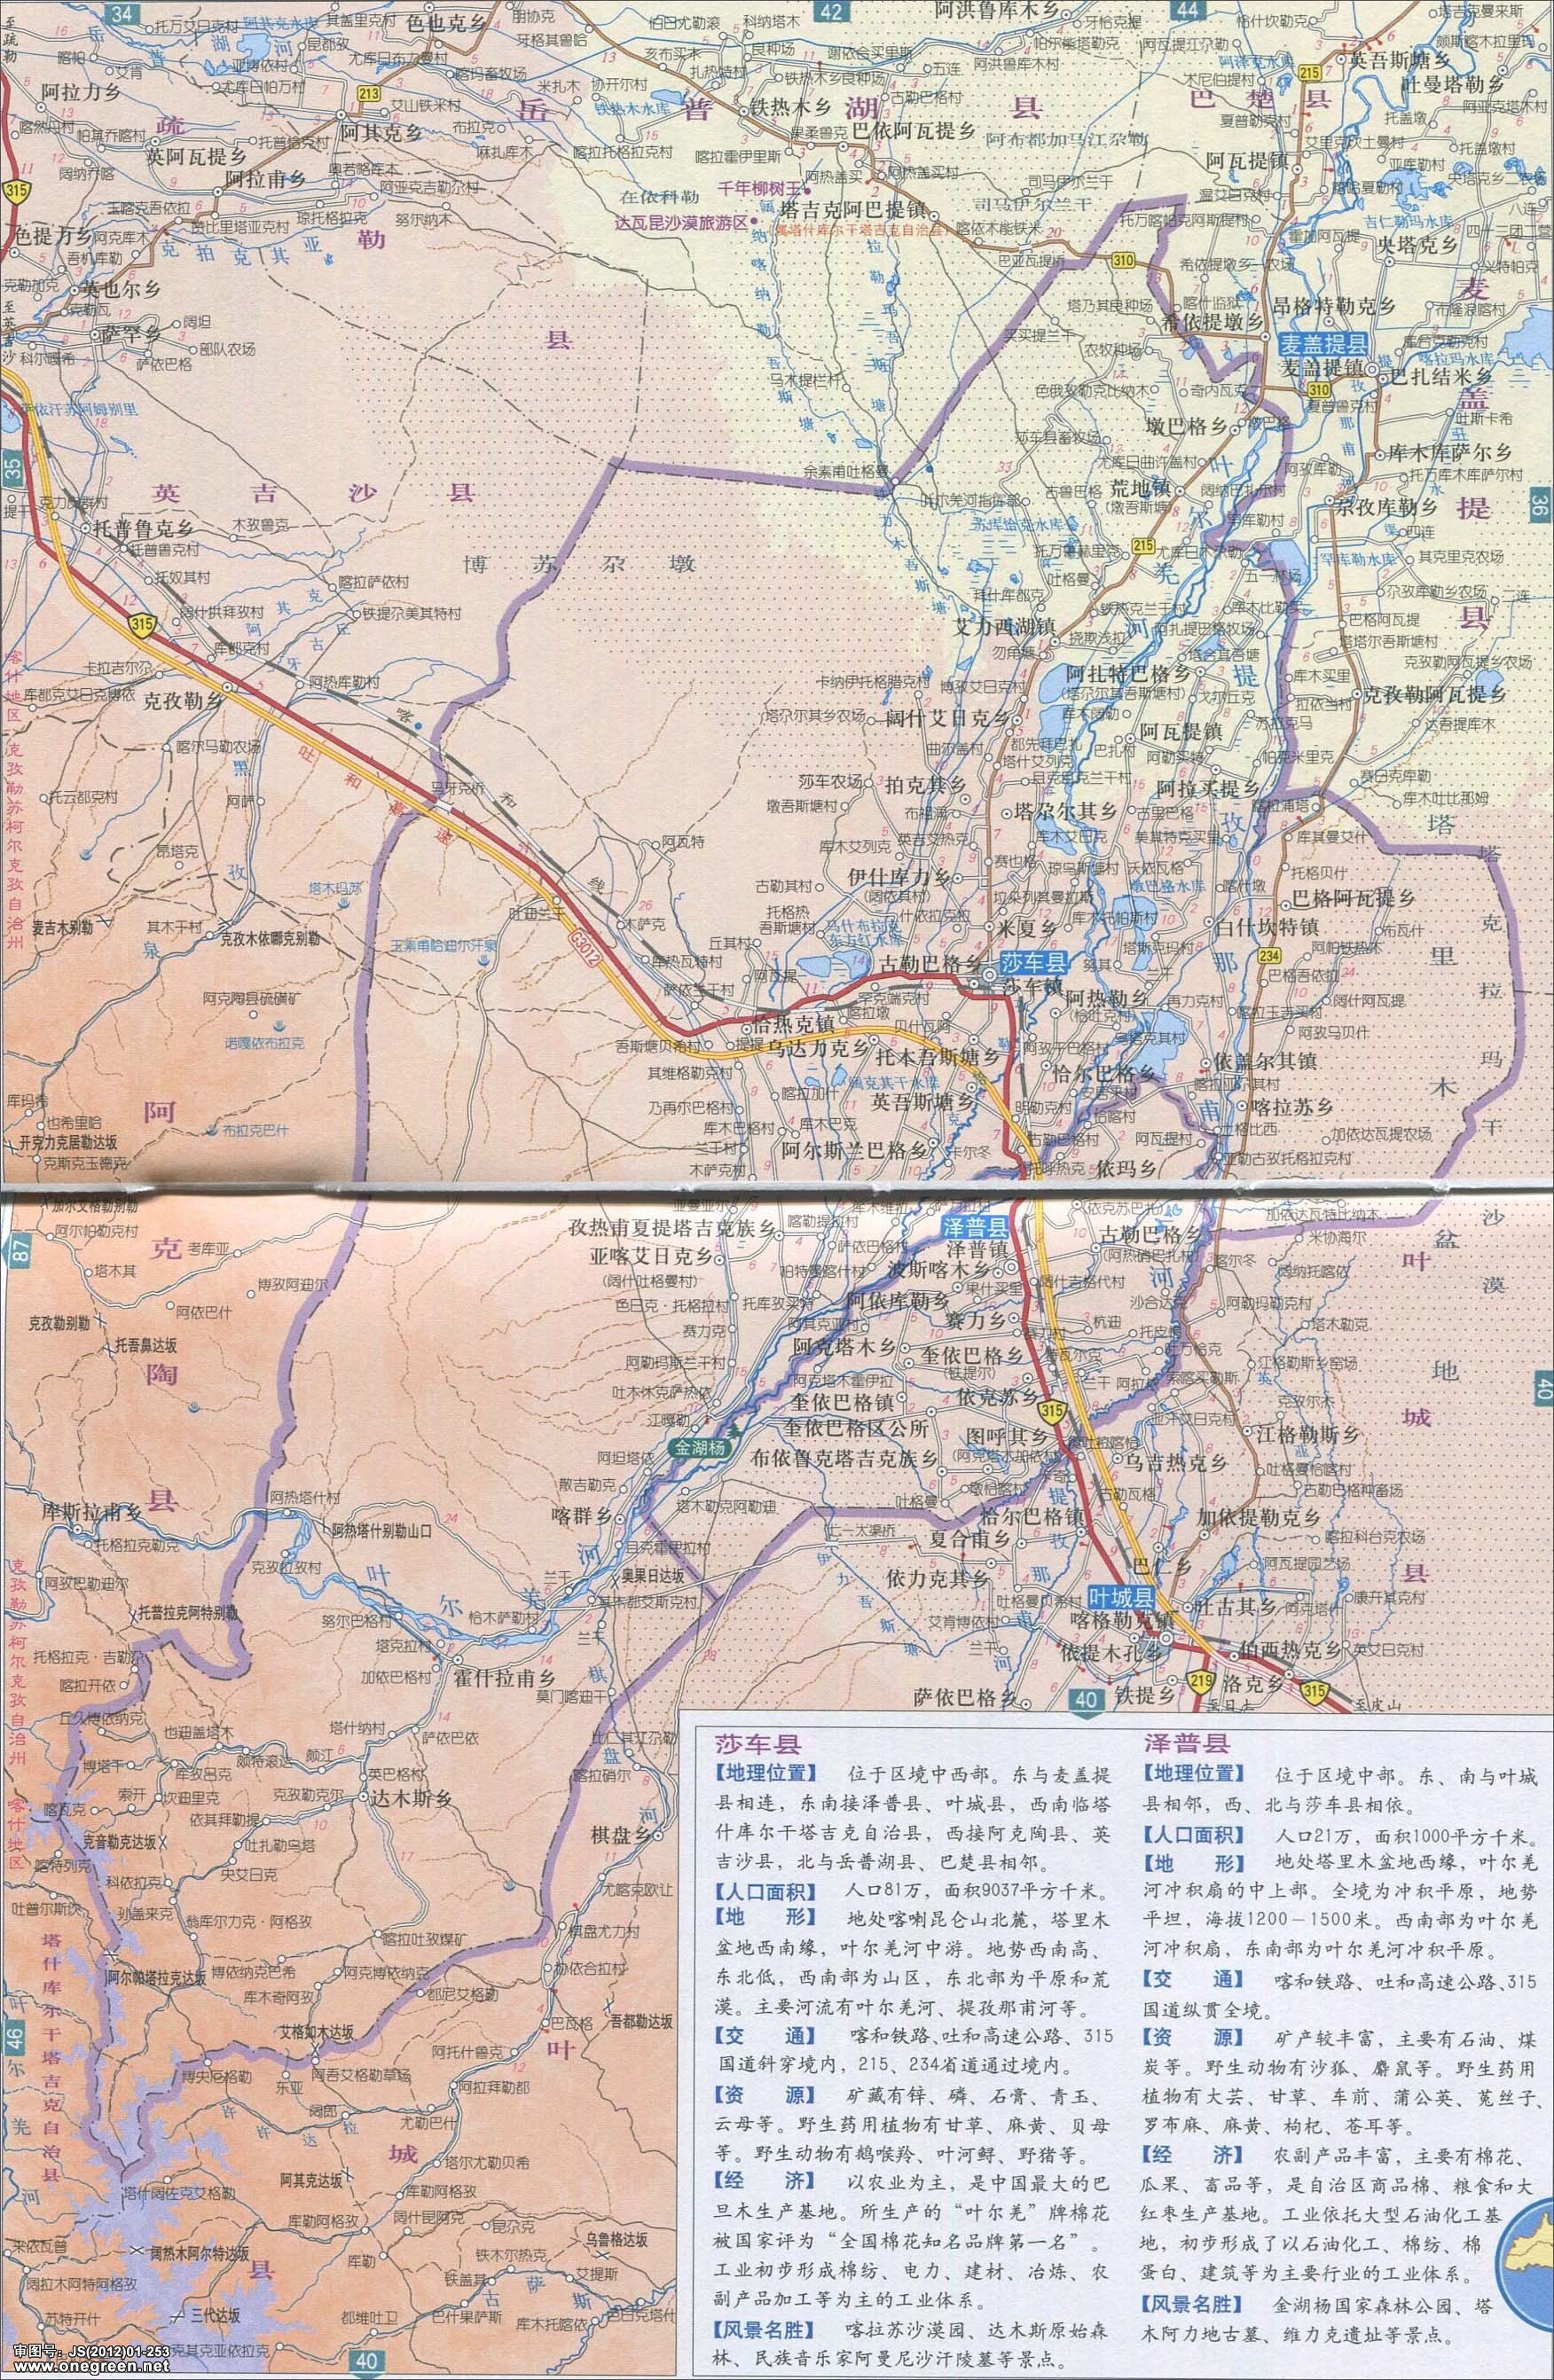 莎车县泽普县地图